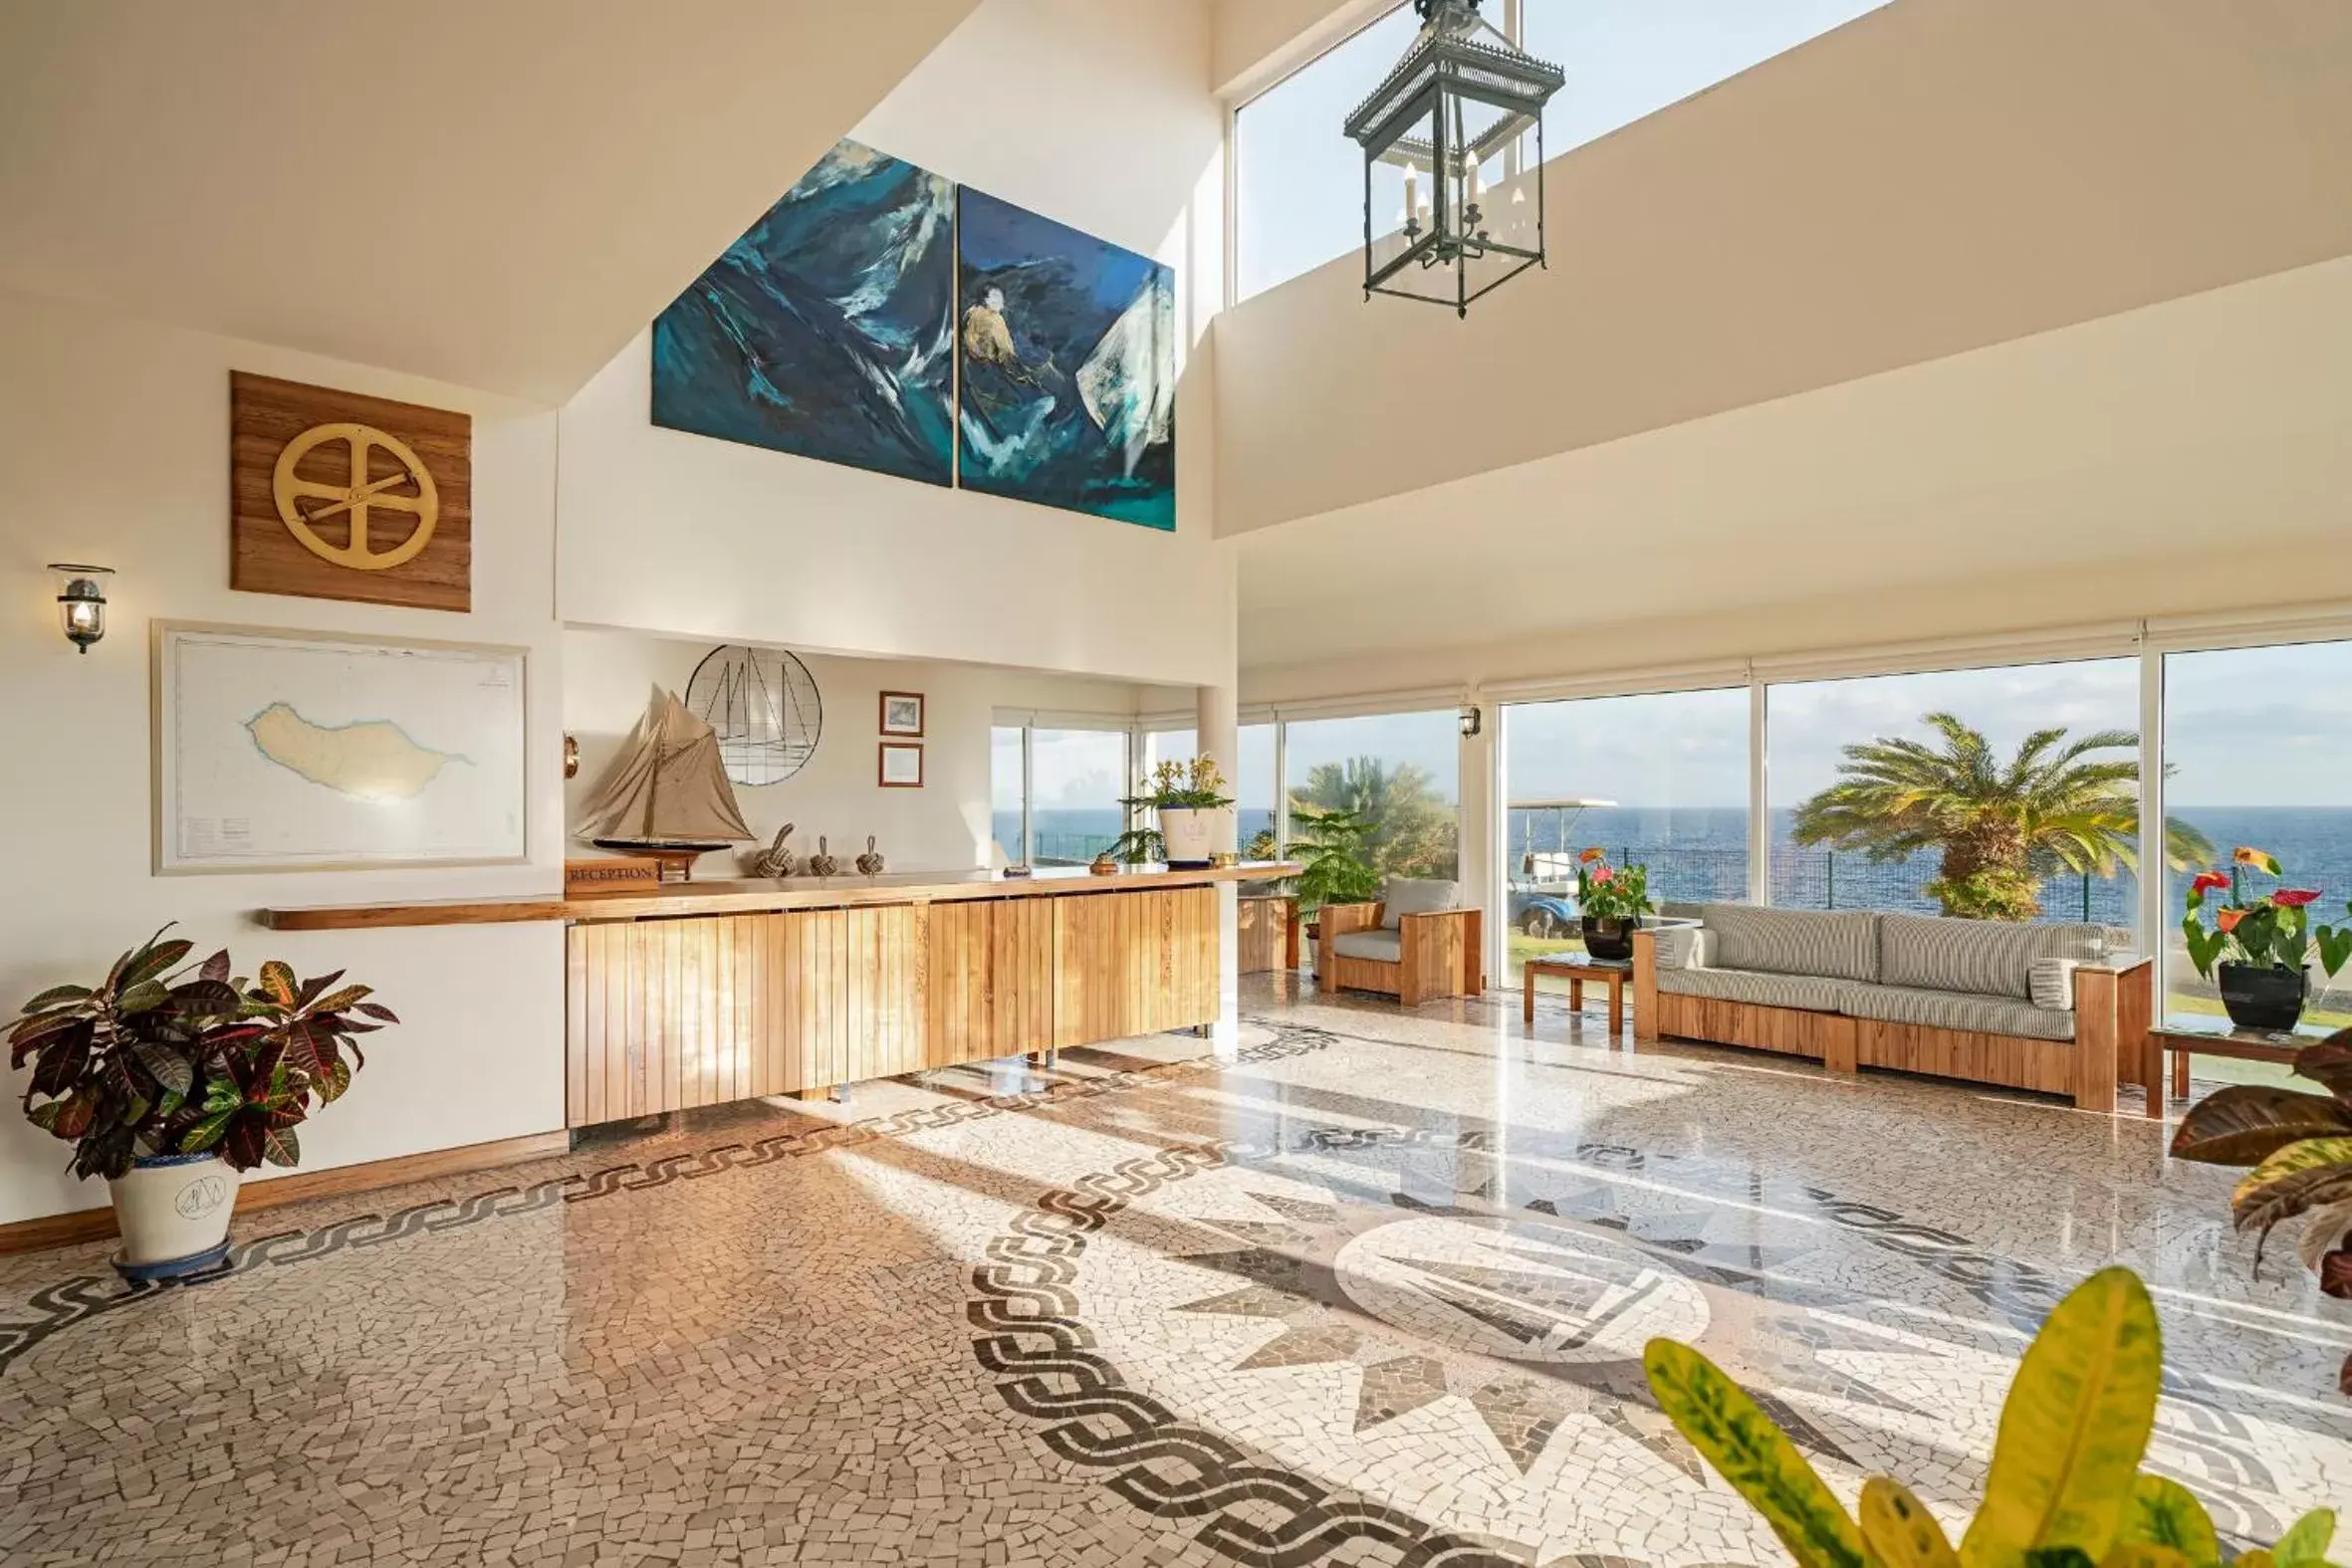 Lobby or reception in Albatroz Beach & Yacht Club